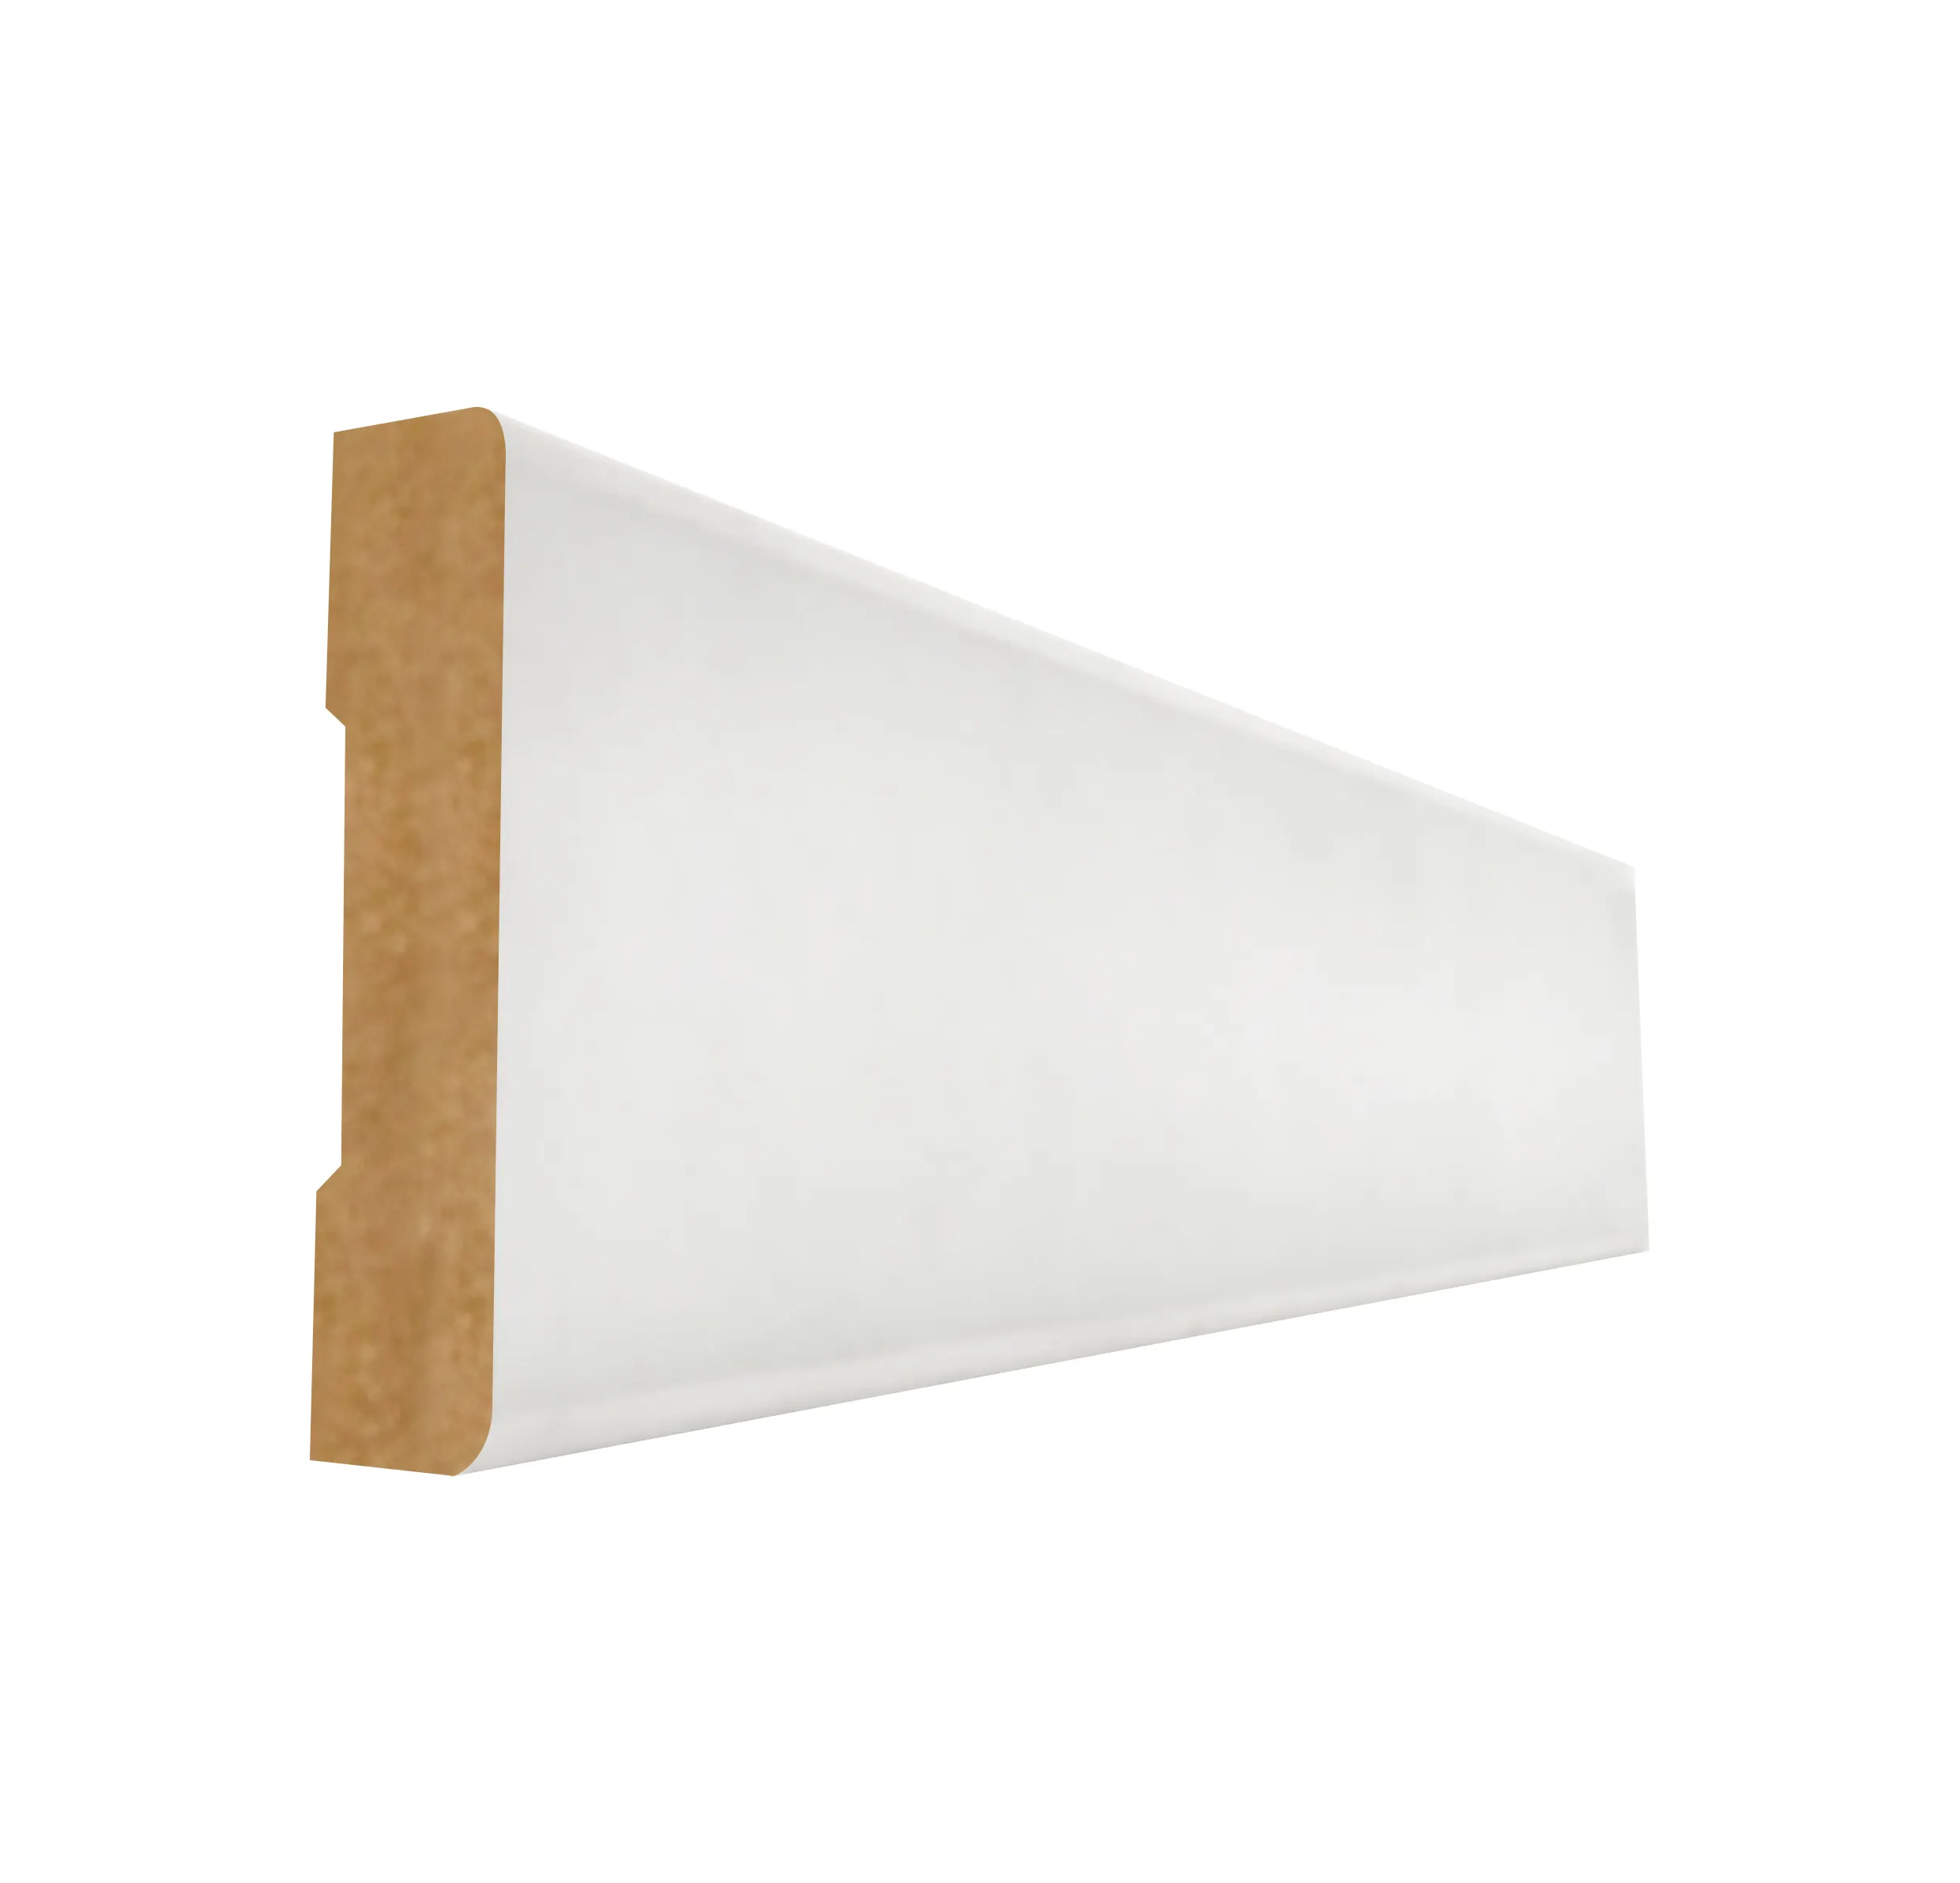 قوالب مسطحة داخلية من خشب ليفي متوسط الكثافة مطبوع عليها طبقة بيضاء تغطي أغطية النوافذ والأبواب بمقاس 3/4 بوصة × 4-1/2 بوصة